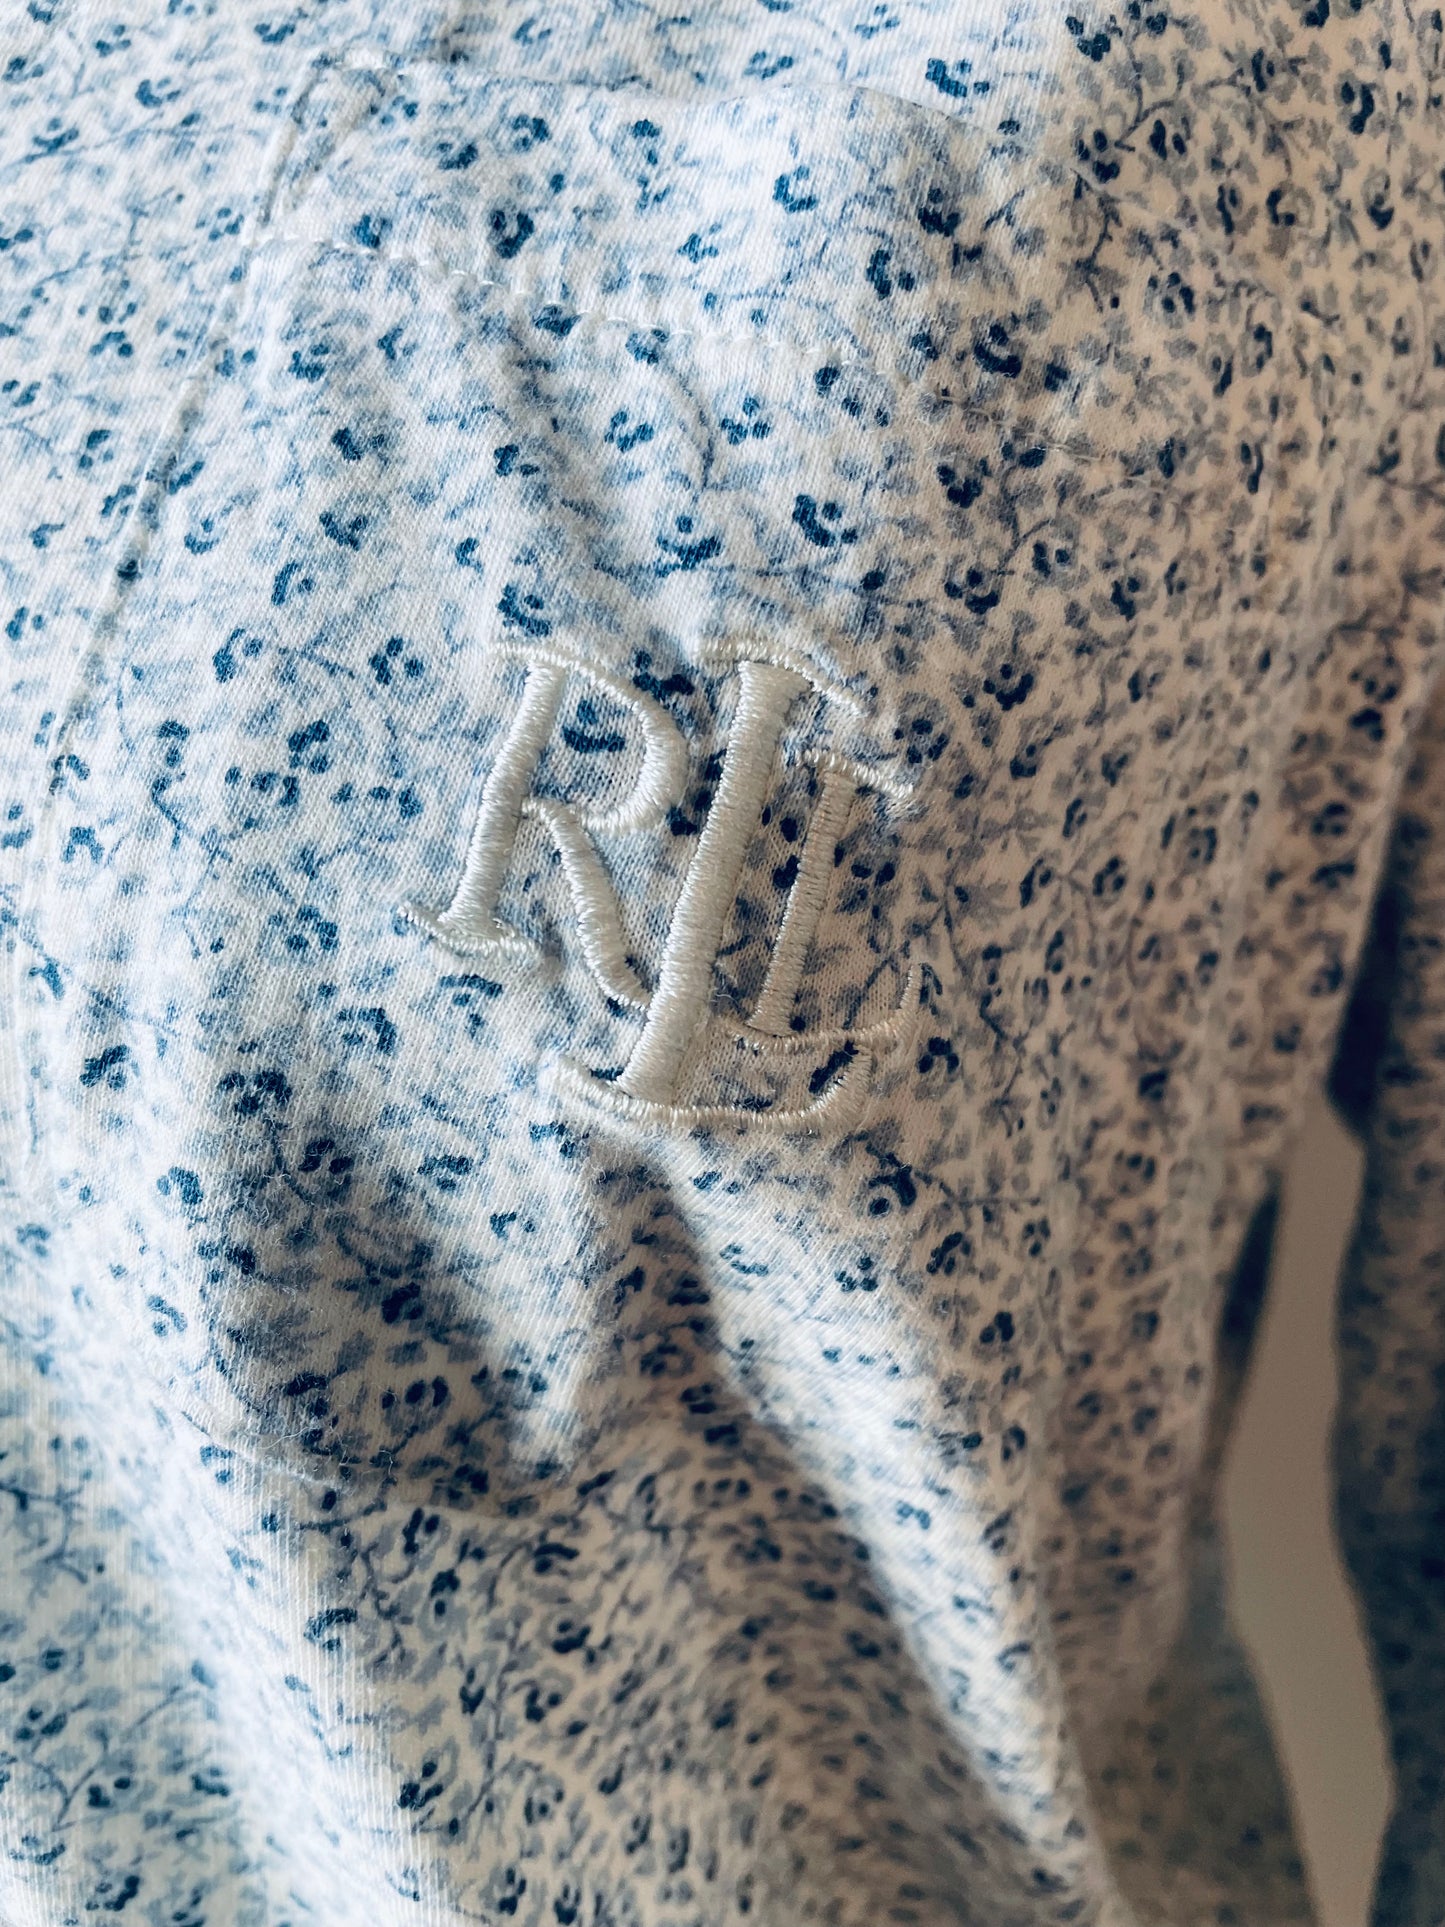 Ralph Lauren Monogramed Night Shirt (L)